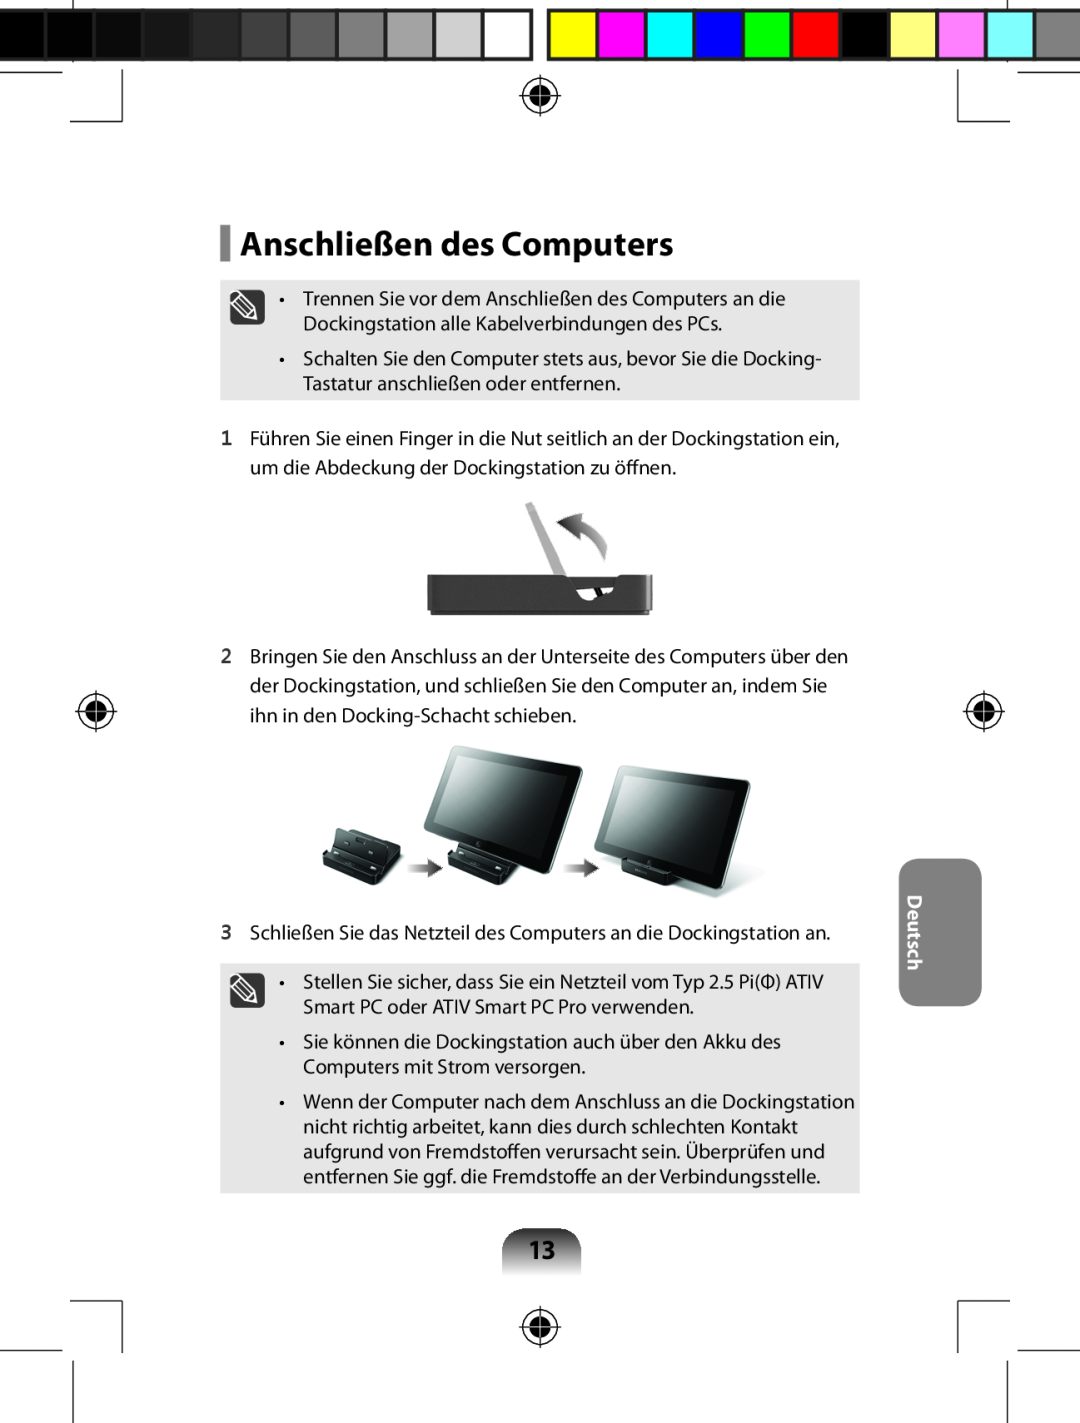 Samsung AA-RD7NMKD/US, AARD7NSDOUS manual Anschließen des Computers, Deutsch 